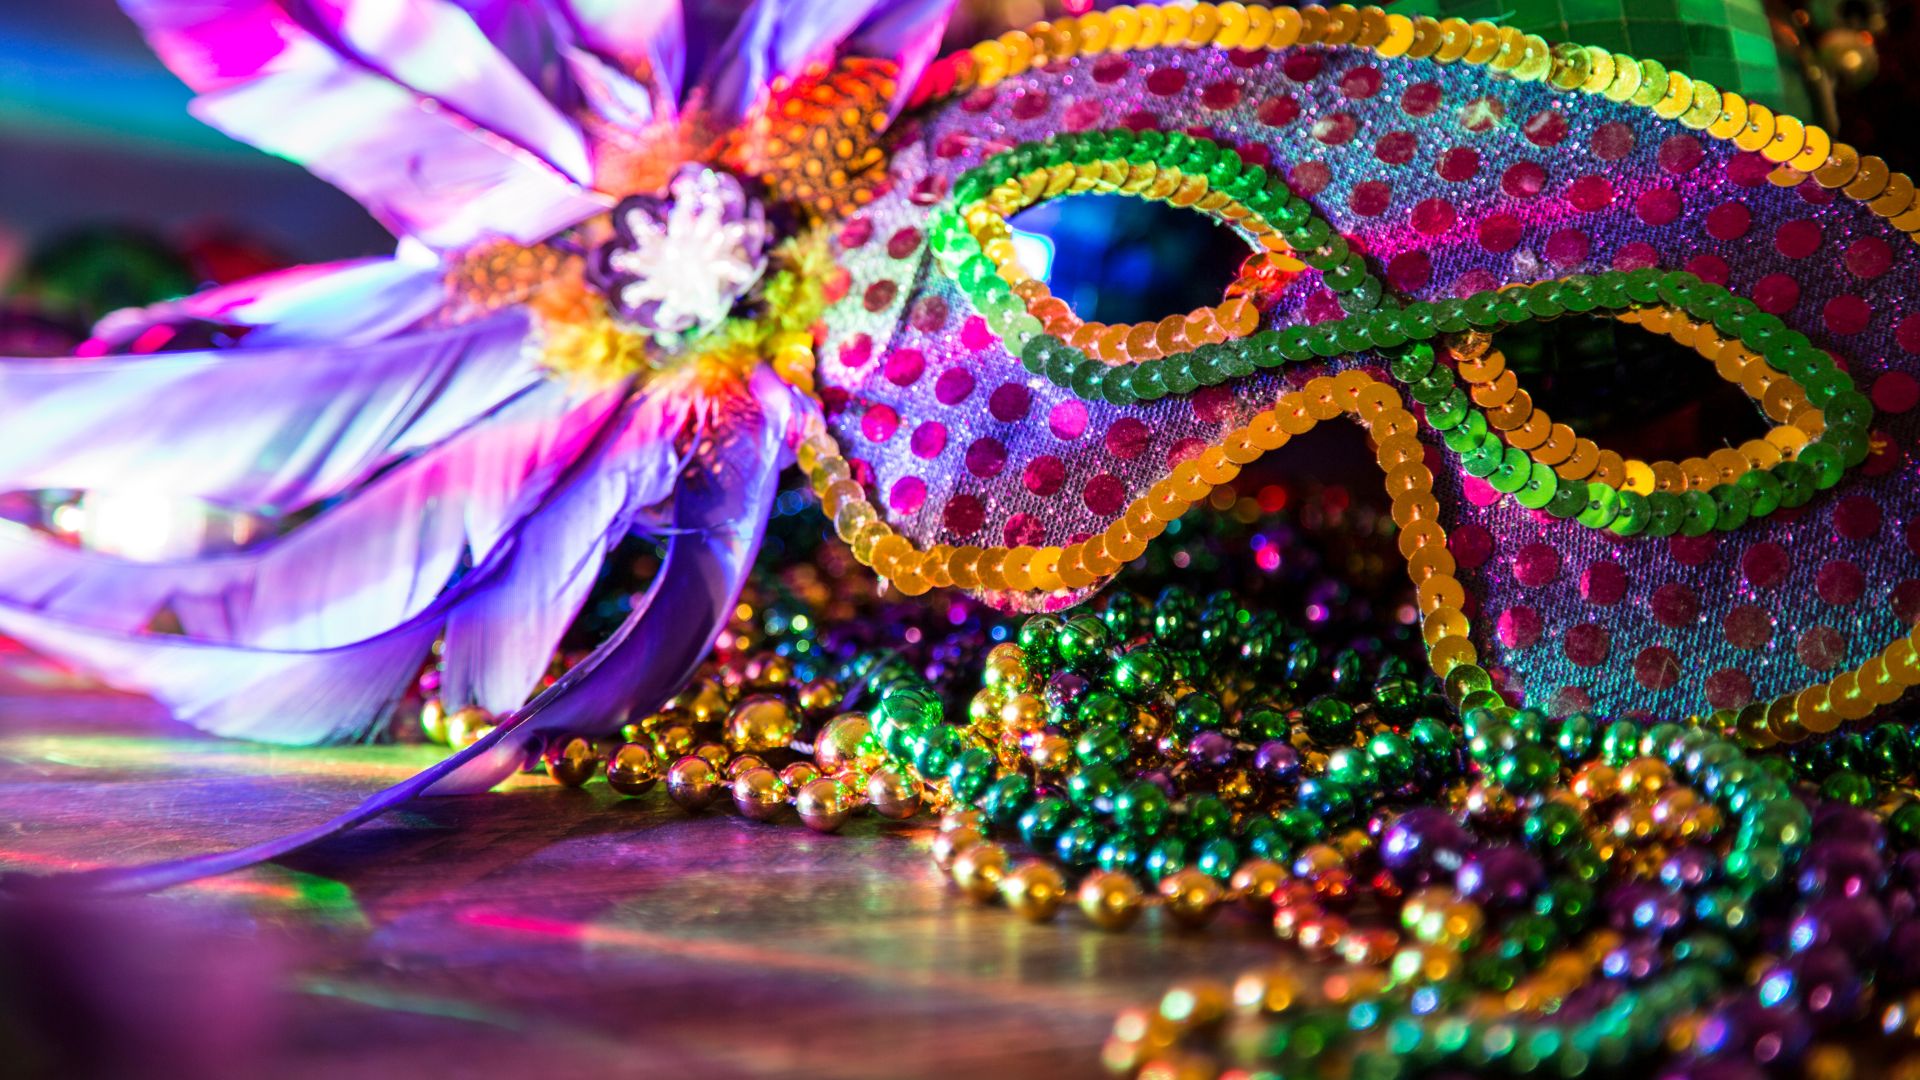 Escuelas de samba con mayores premios en Carnaval